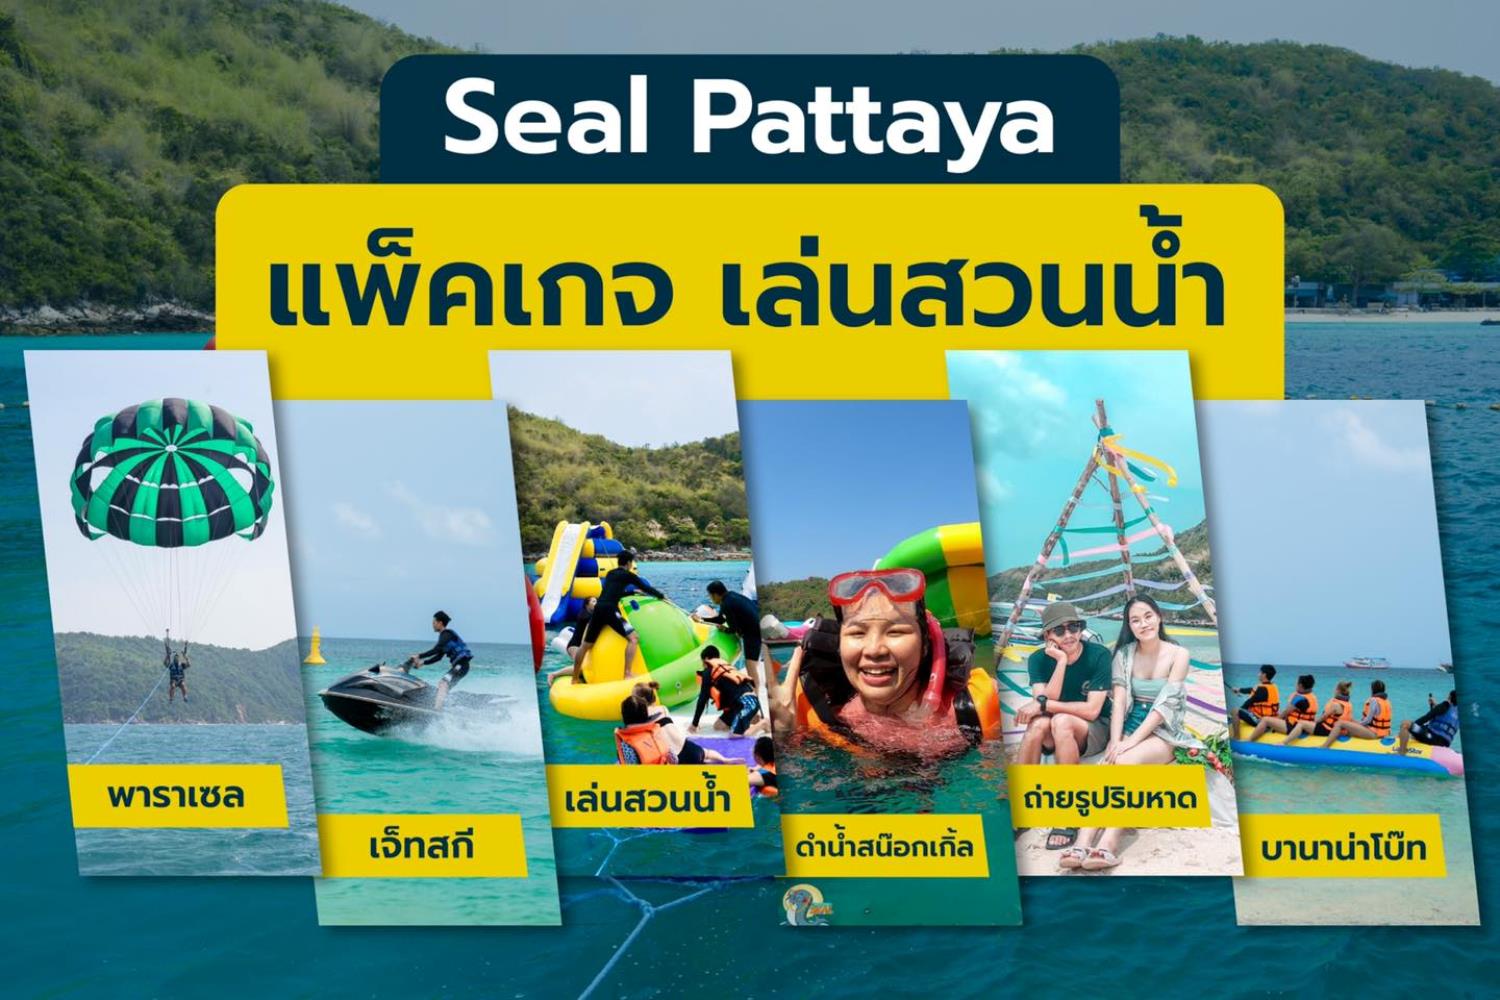 Seal Pattaya